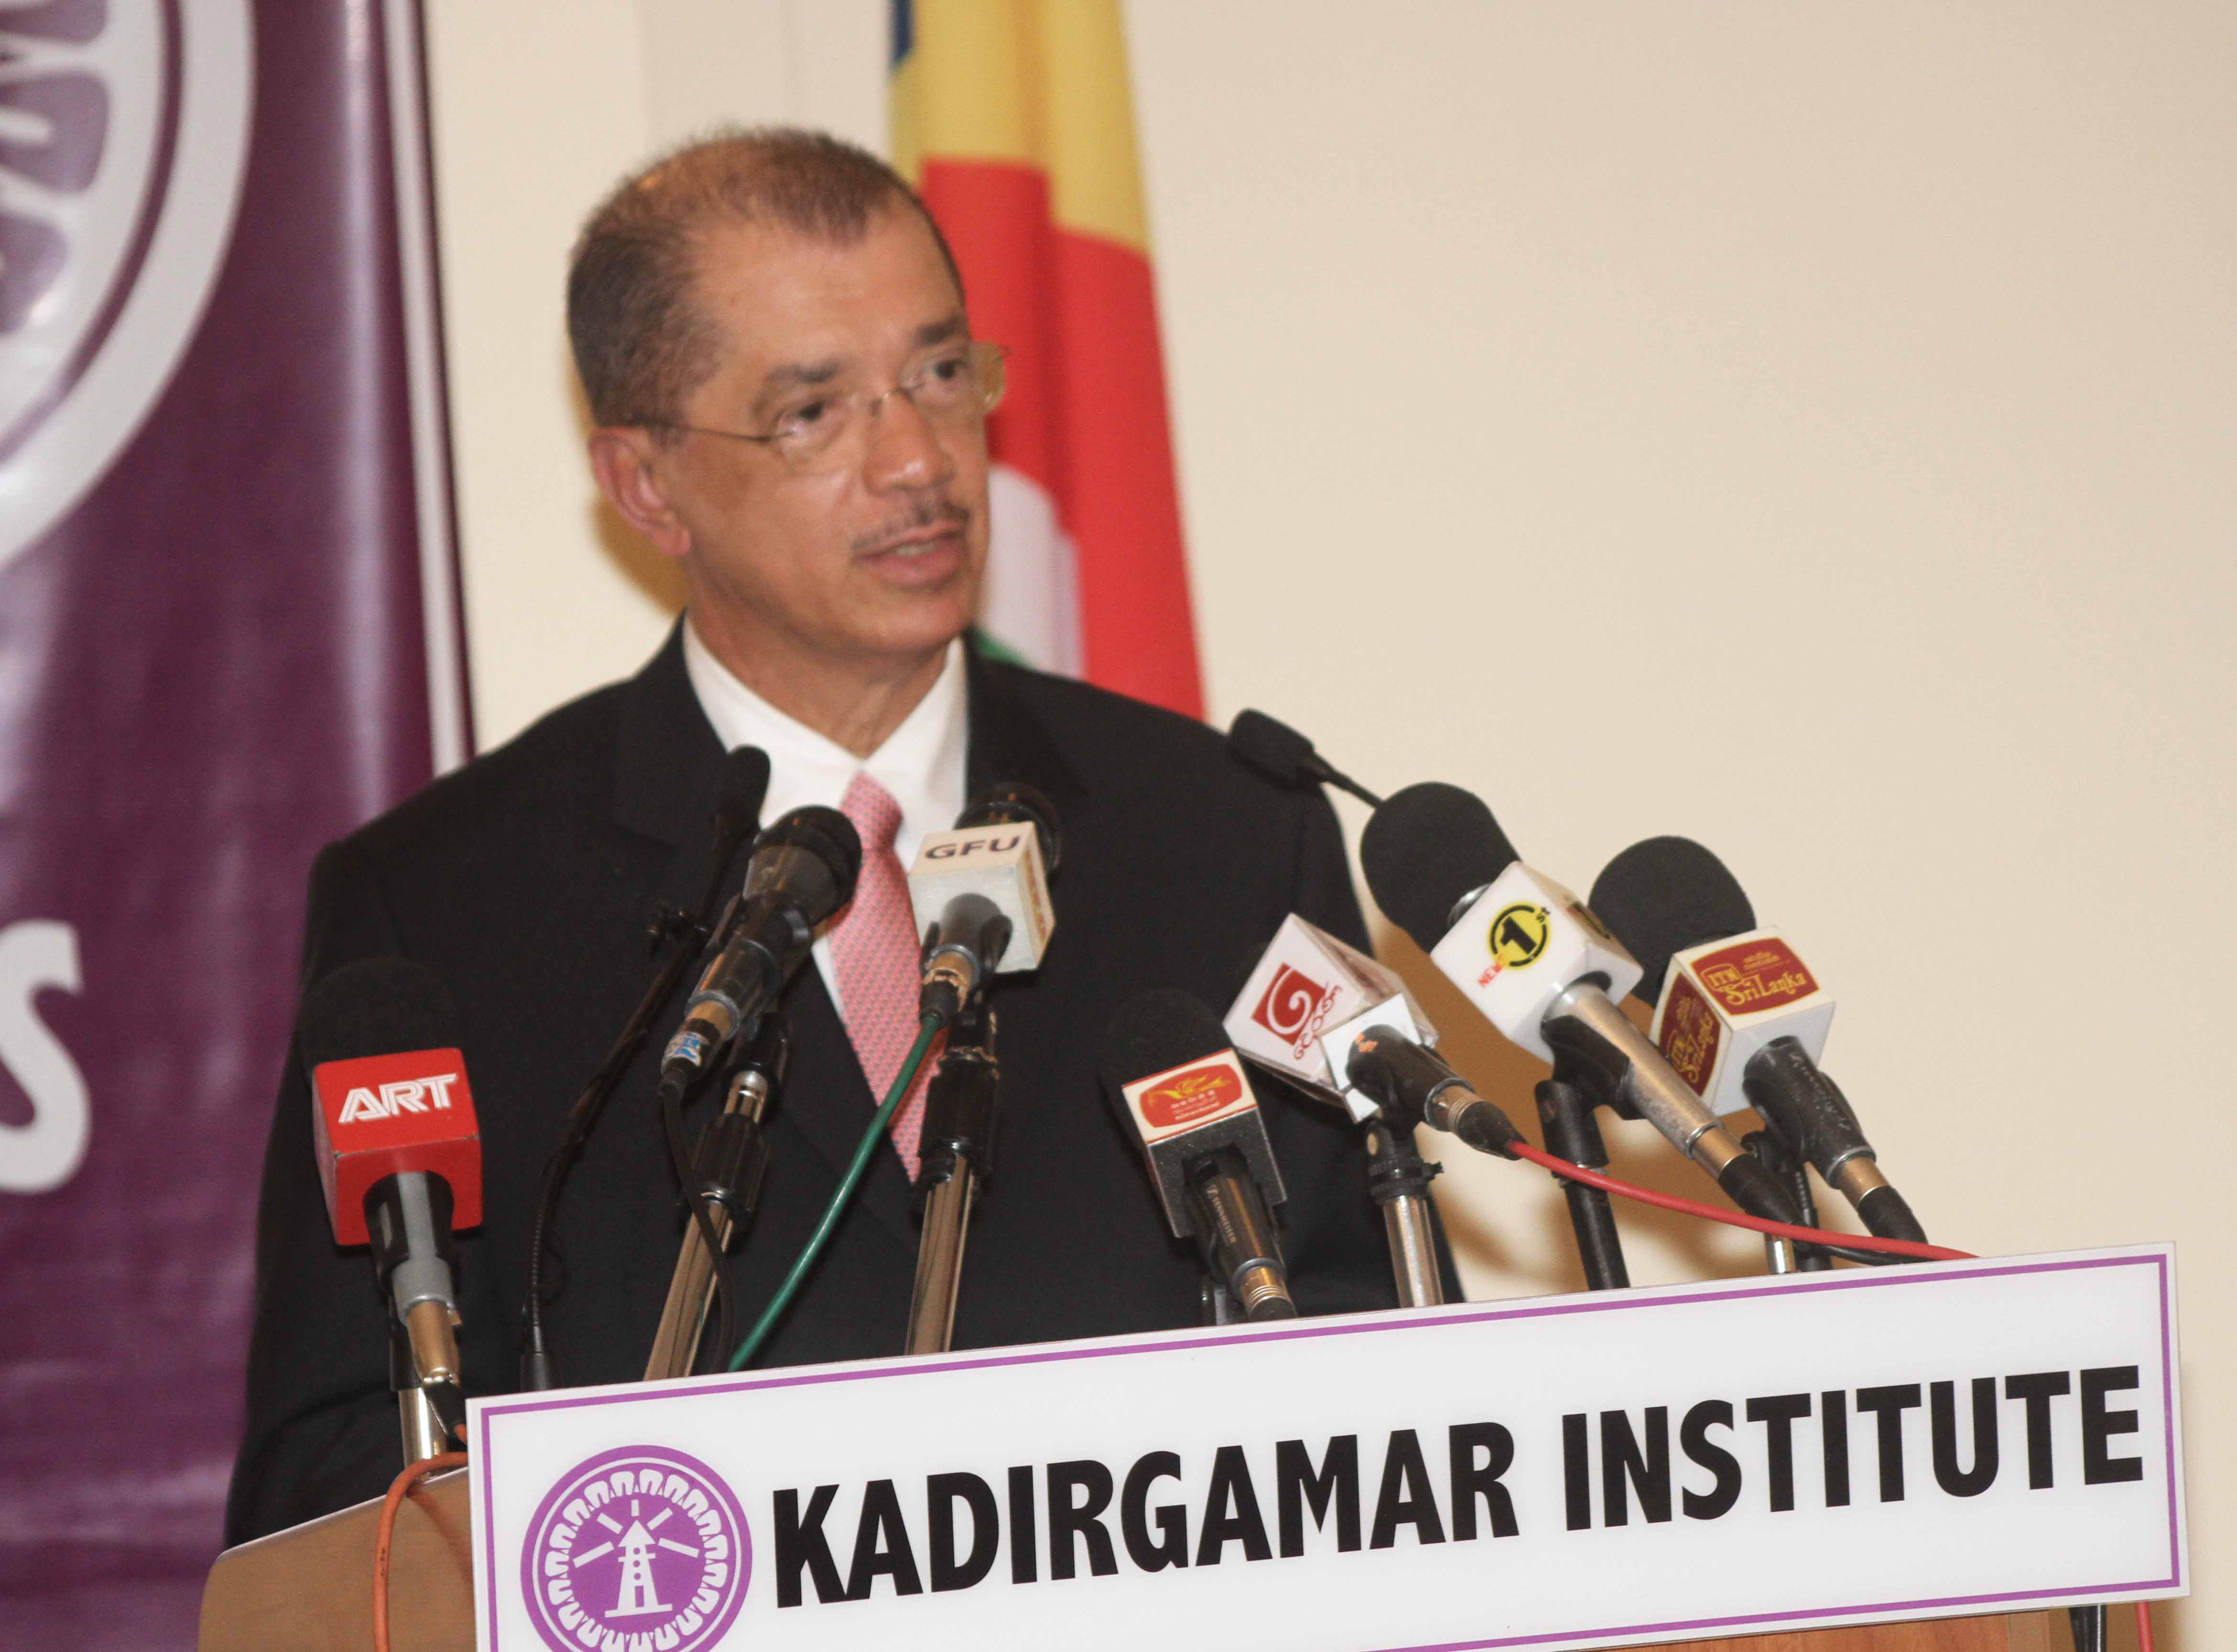 President Michel at Kadirgamar Institute